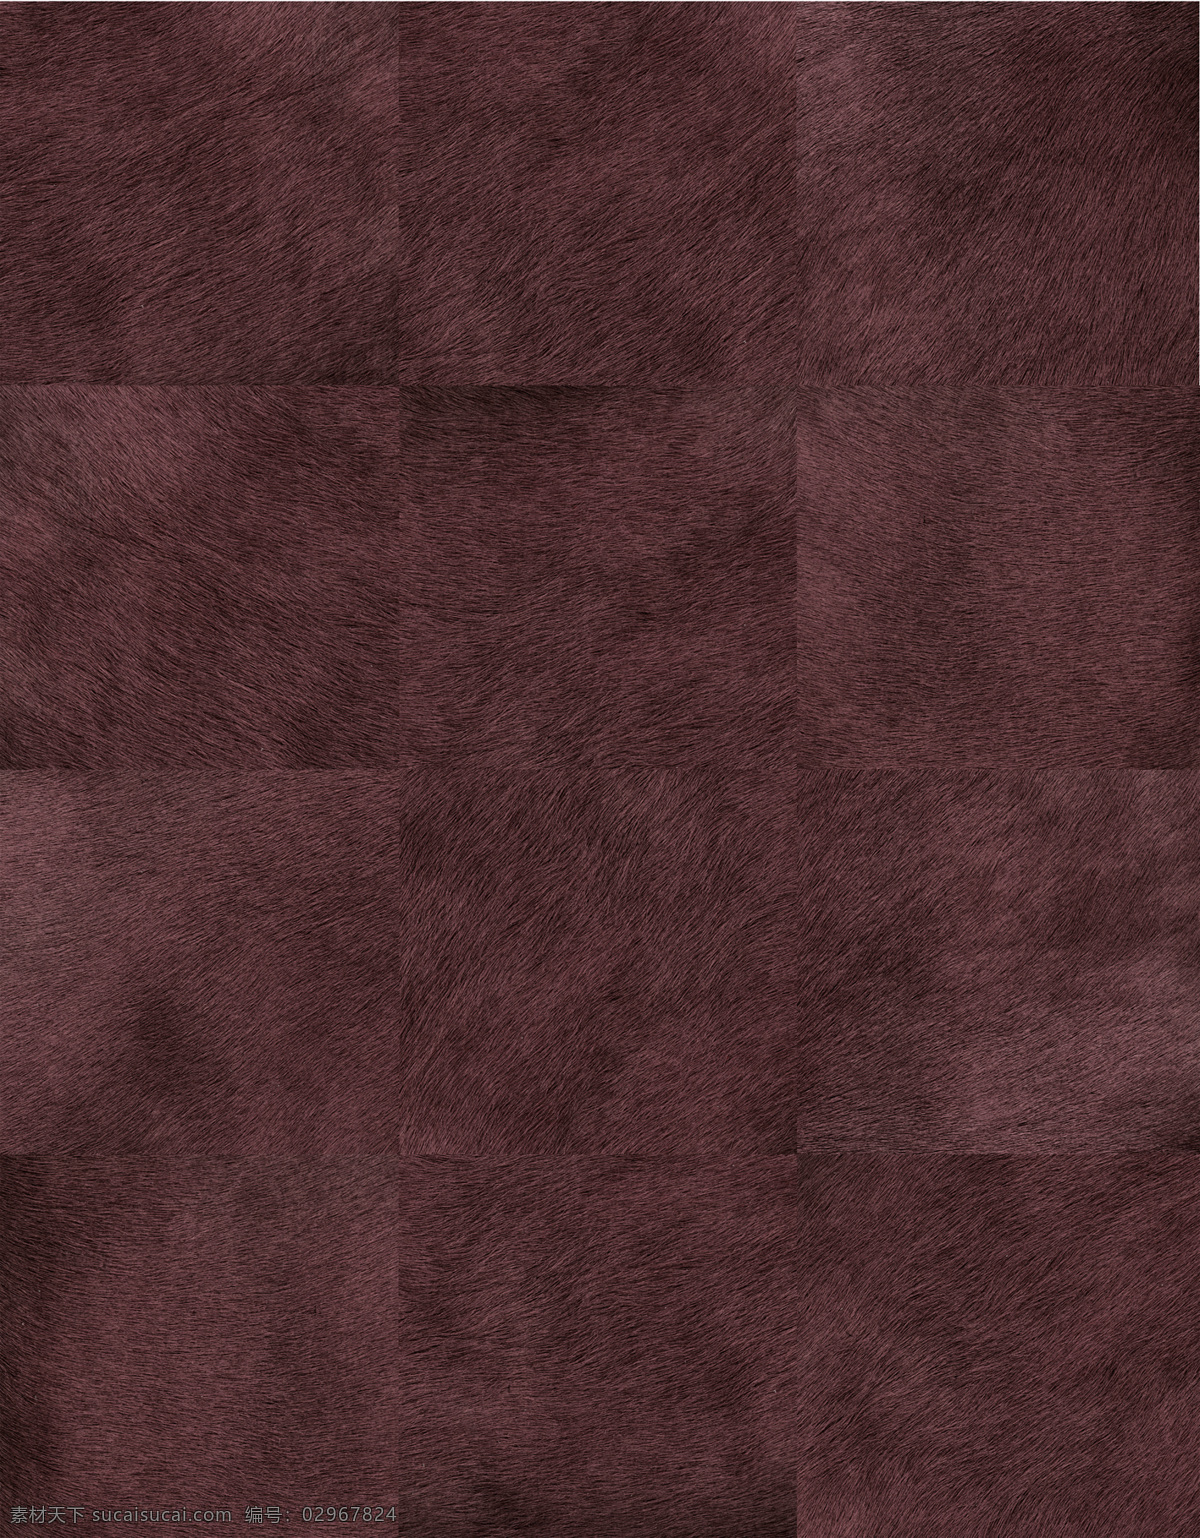 深 紫色 地毯 贴图 3d材质贴图 地毯贴图素材 材质 拼接 图案 地毯贴图下载